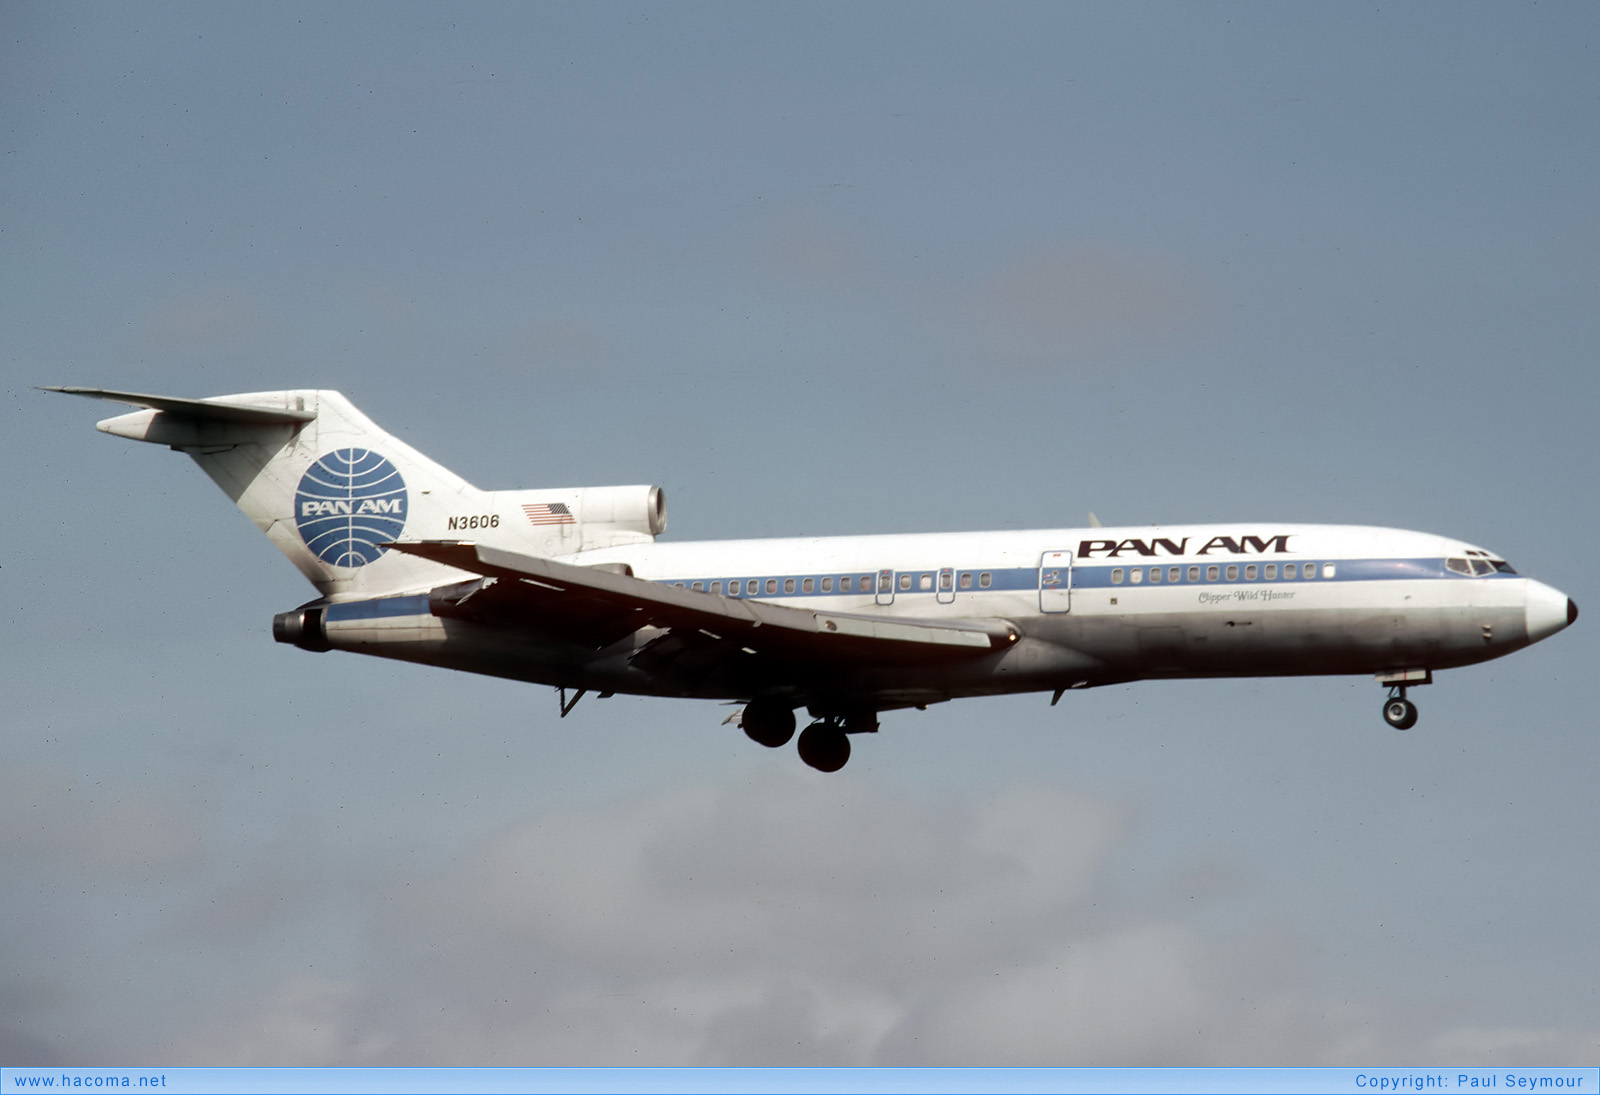 Foto von N3606 - Pan Am Clipper Wild Hunter - Miami International Airport - 20.11.1983